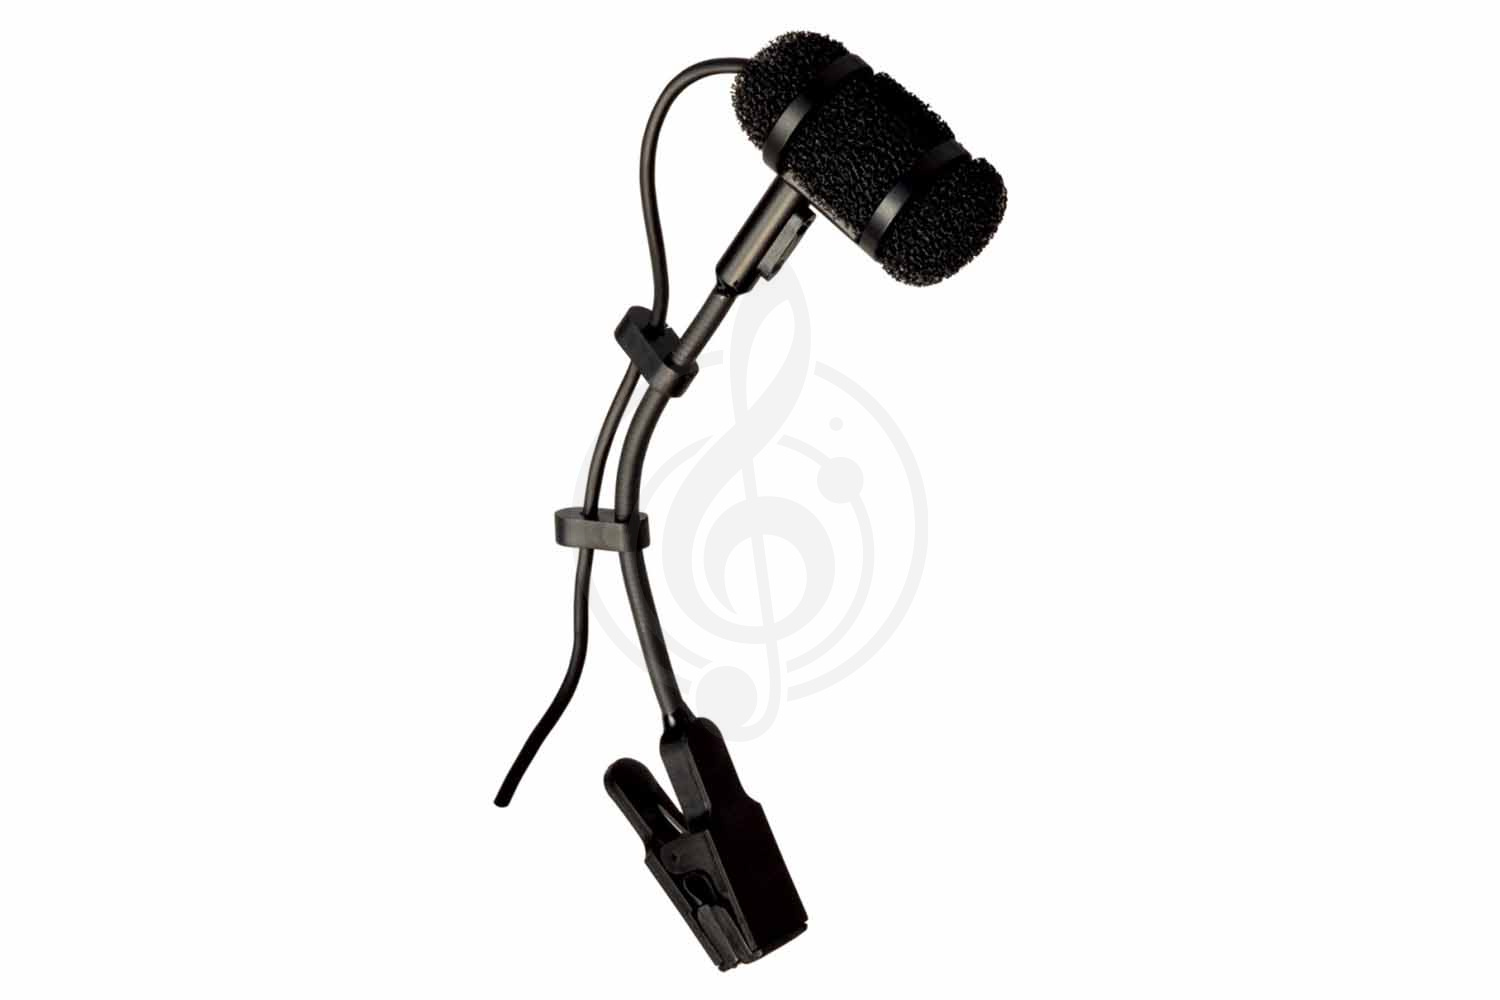 Инструментальный микрофон Инструментальные микрофоны Superlux Superlux PRA383DXLR - инструментальный микрофон на гусиной шее с клипсой PRA383DXLR - фото 1